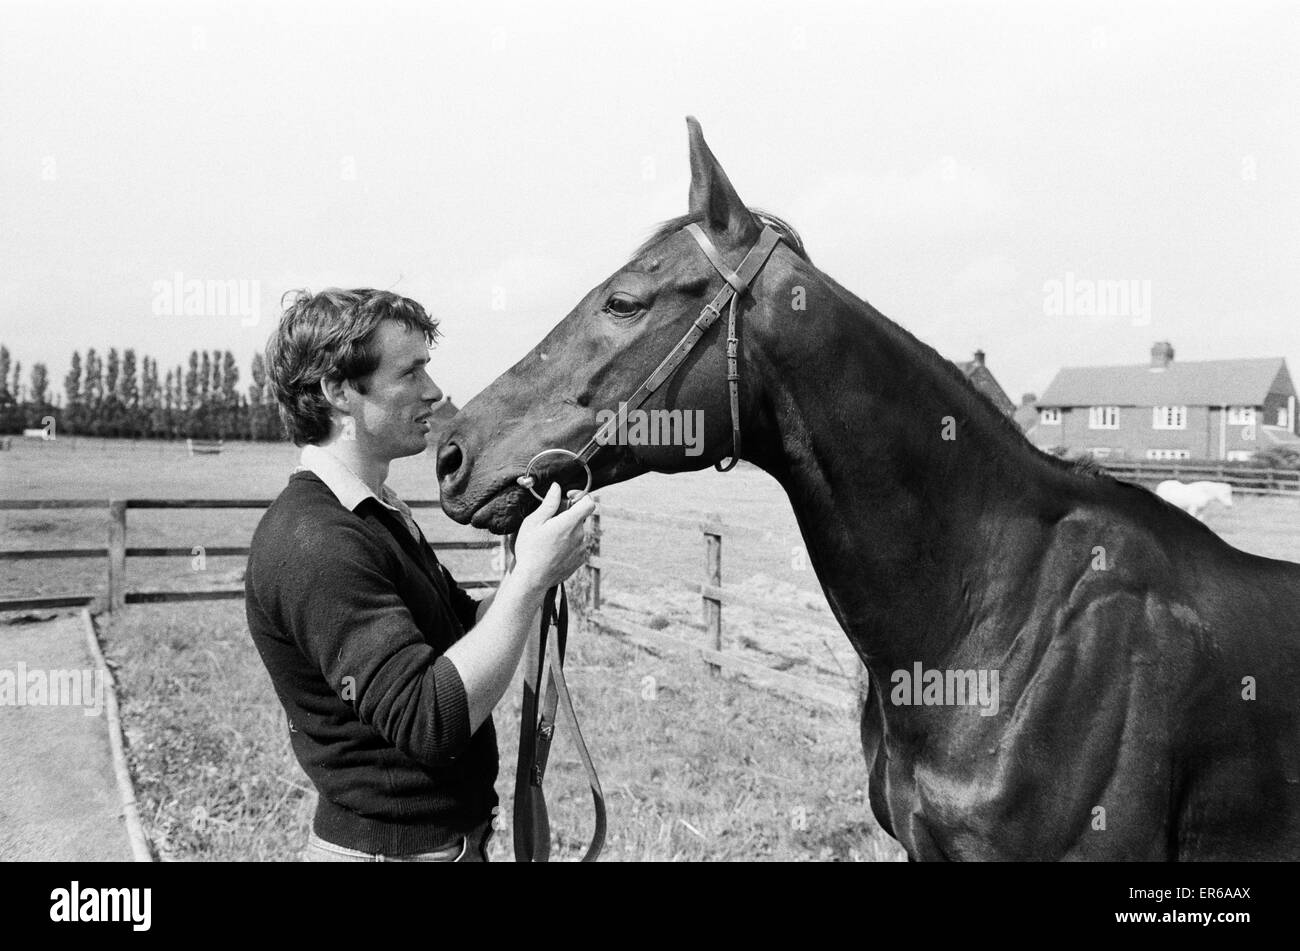 Cheval gagnant du Pigeon mer trente-sept courses, vu ici avec Steven Muldoon, fils de Pat Muldoon qui possède le cheval. 21 Juillet 1983 Banque D'Images